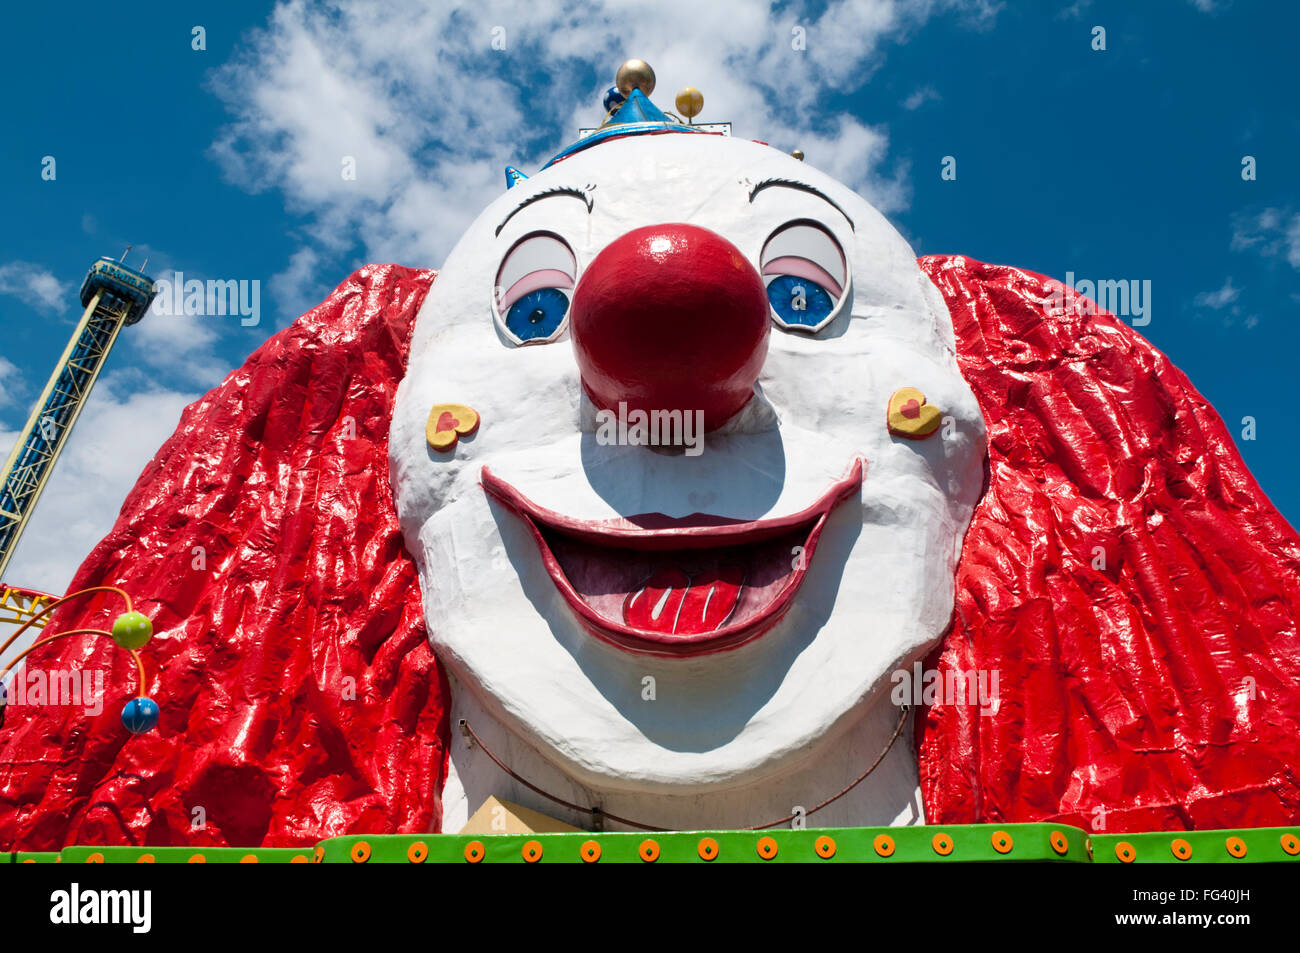 Ein riesiger Clown Gesicht oben als Besucherattraktion im Vergnügungspark Prater in Wien, Österreich Stockfoto